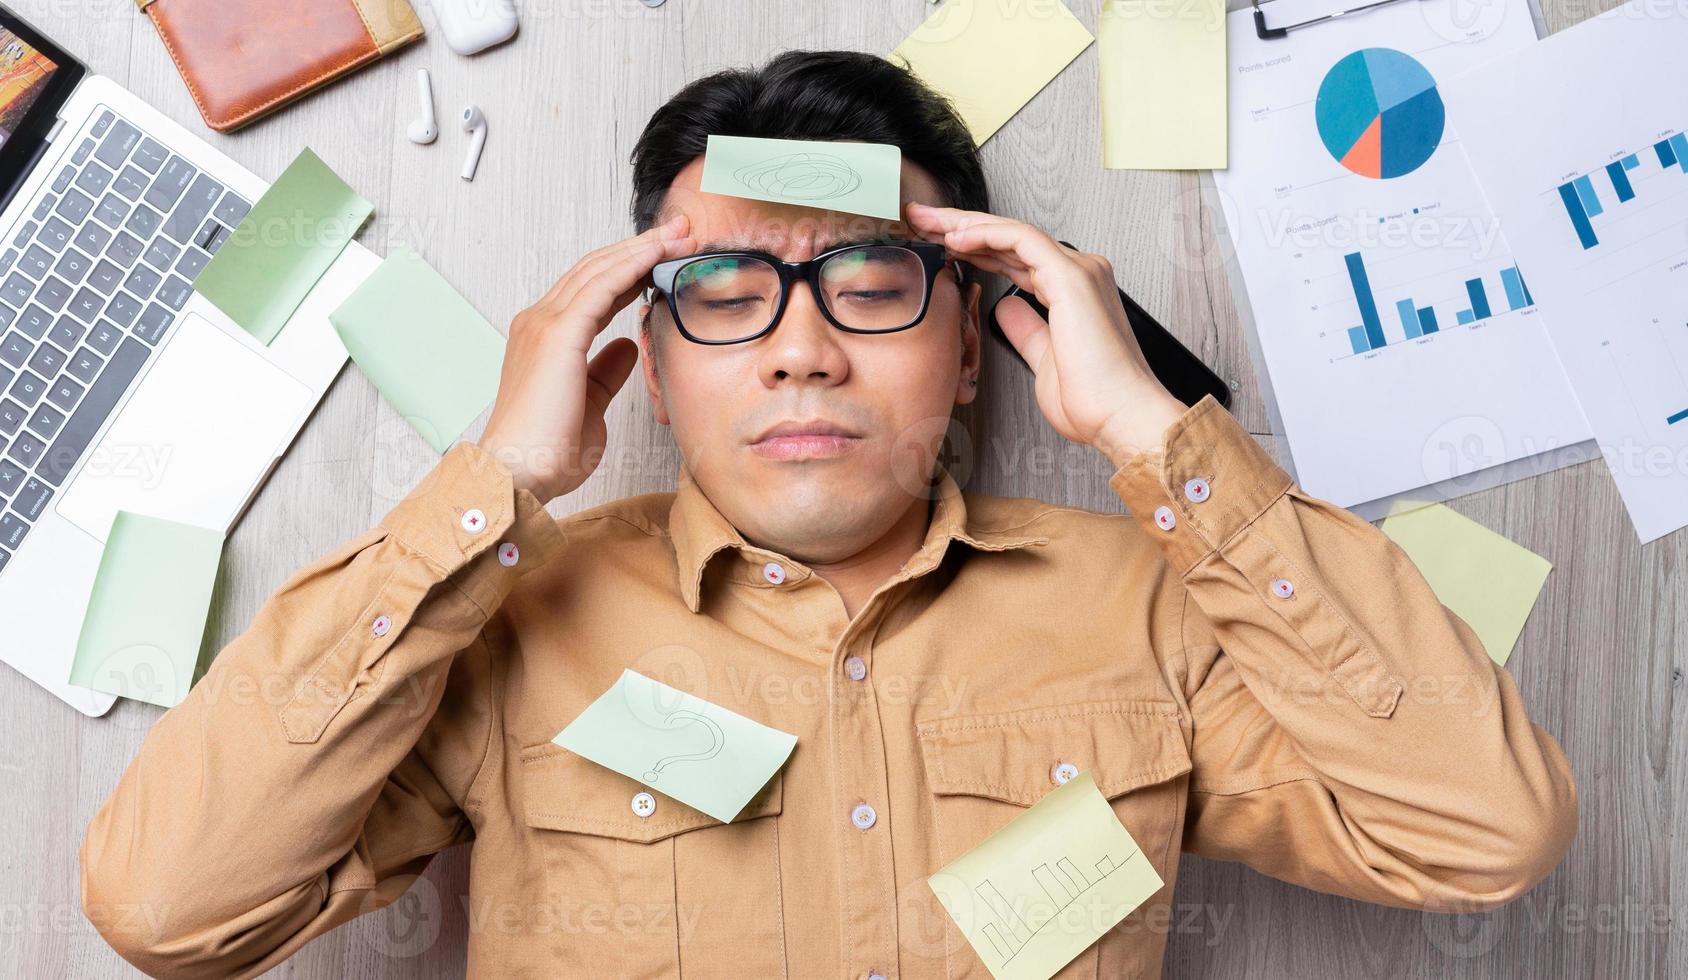 homme asiatique allongé sur une pile de papiers et se sentant fatigué du travail photo